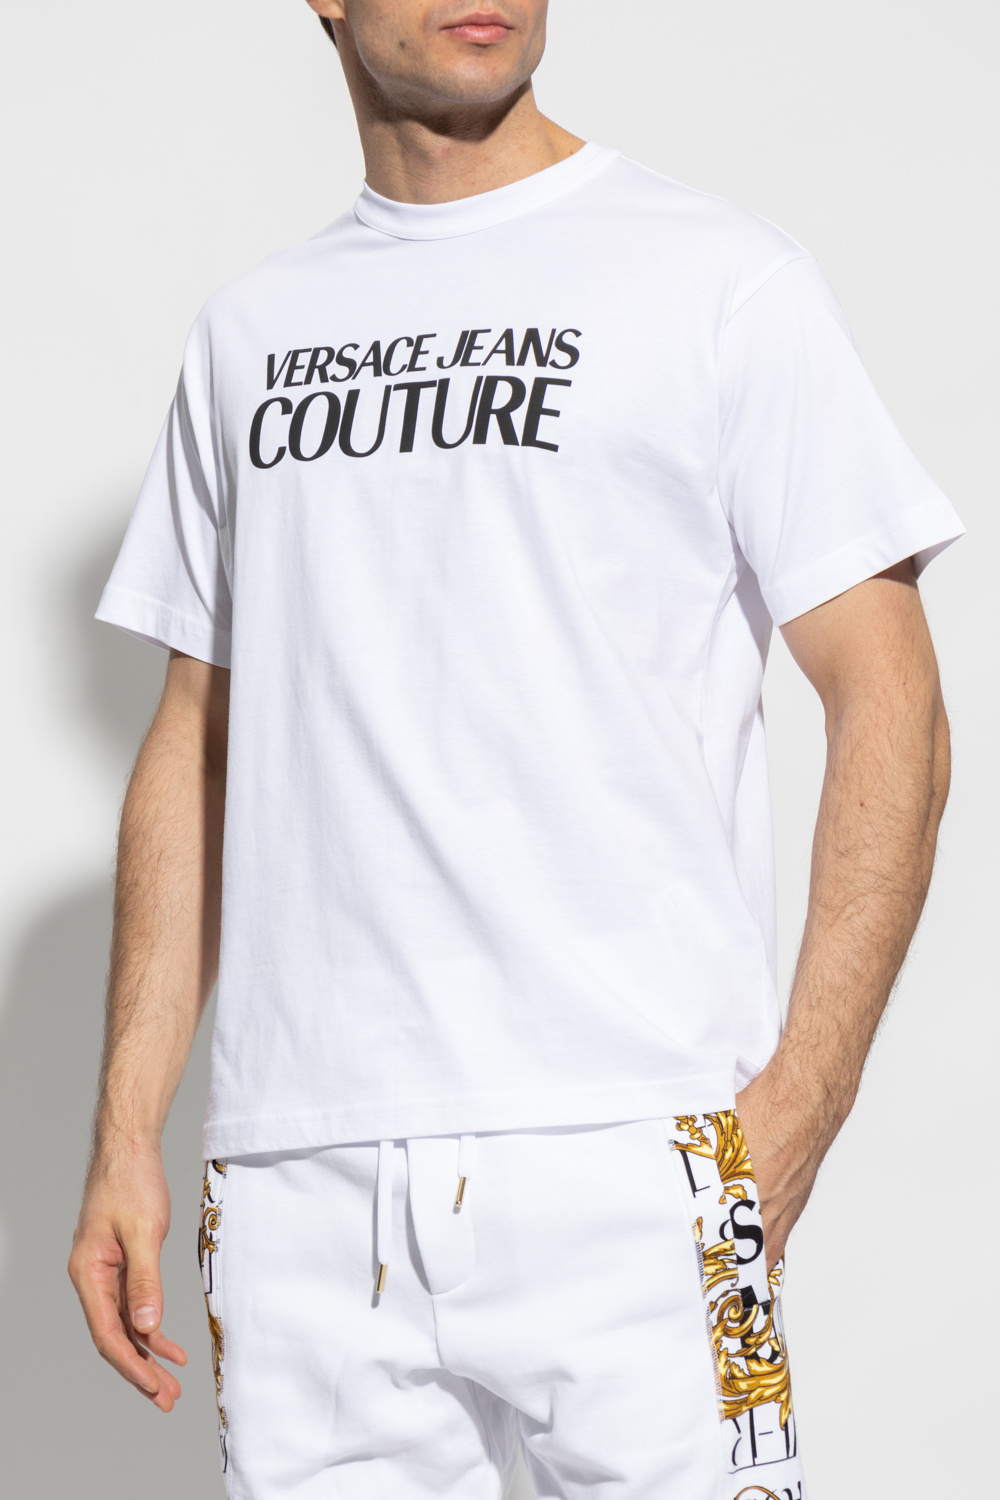 Versace Jeans Couture Un jean et 2 t-shirts